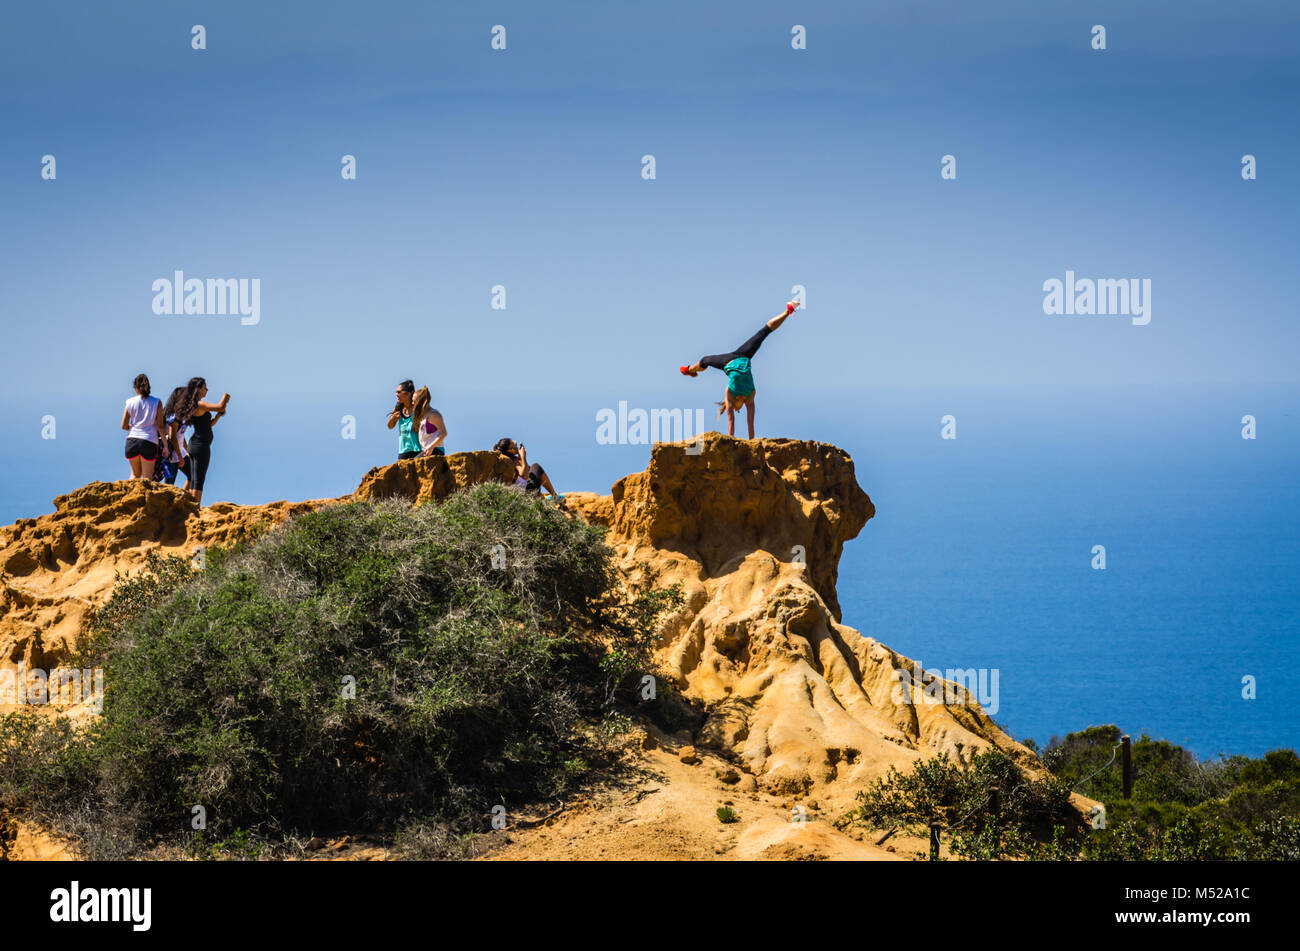 Mujer golpea a un pino yoga posan para una fotografía sobre un acantilado en la Reserva Natural Estatal Torrey Pines, cerca de San Diego, California. Foto de stock